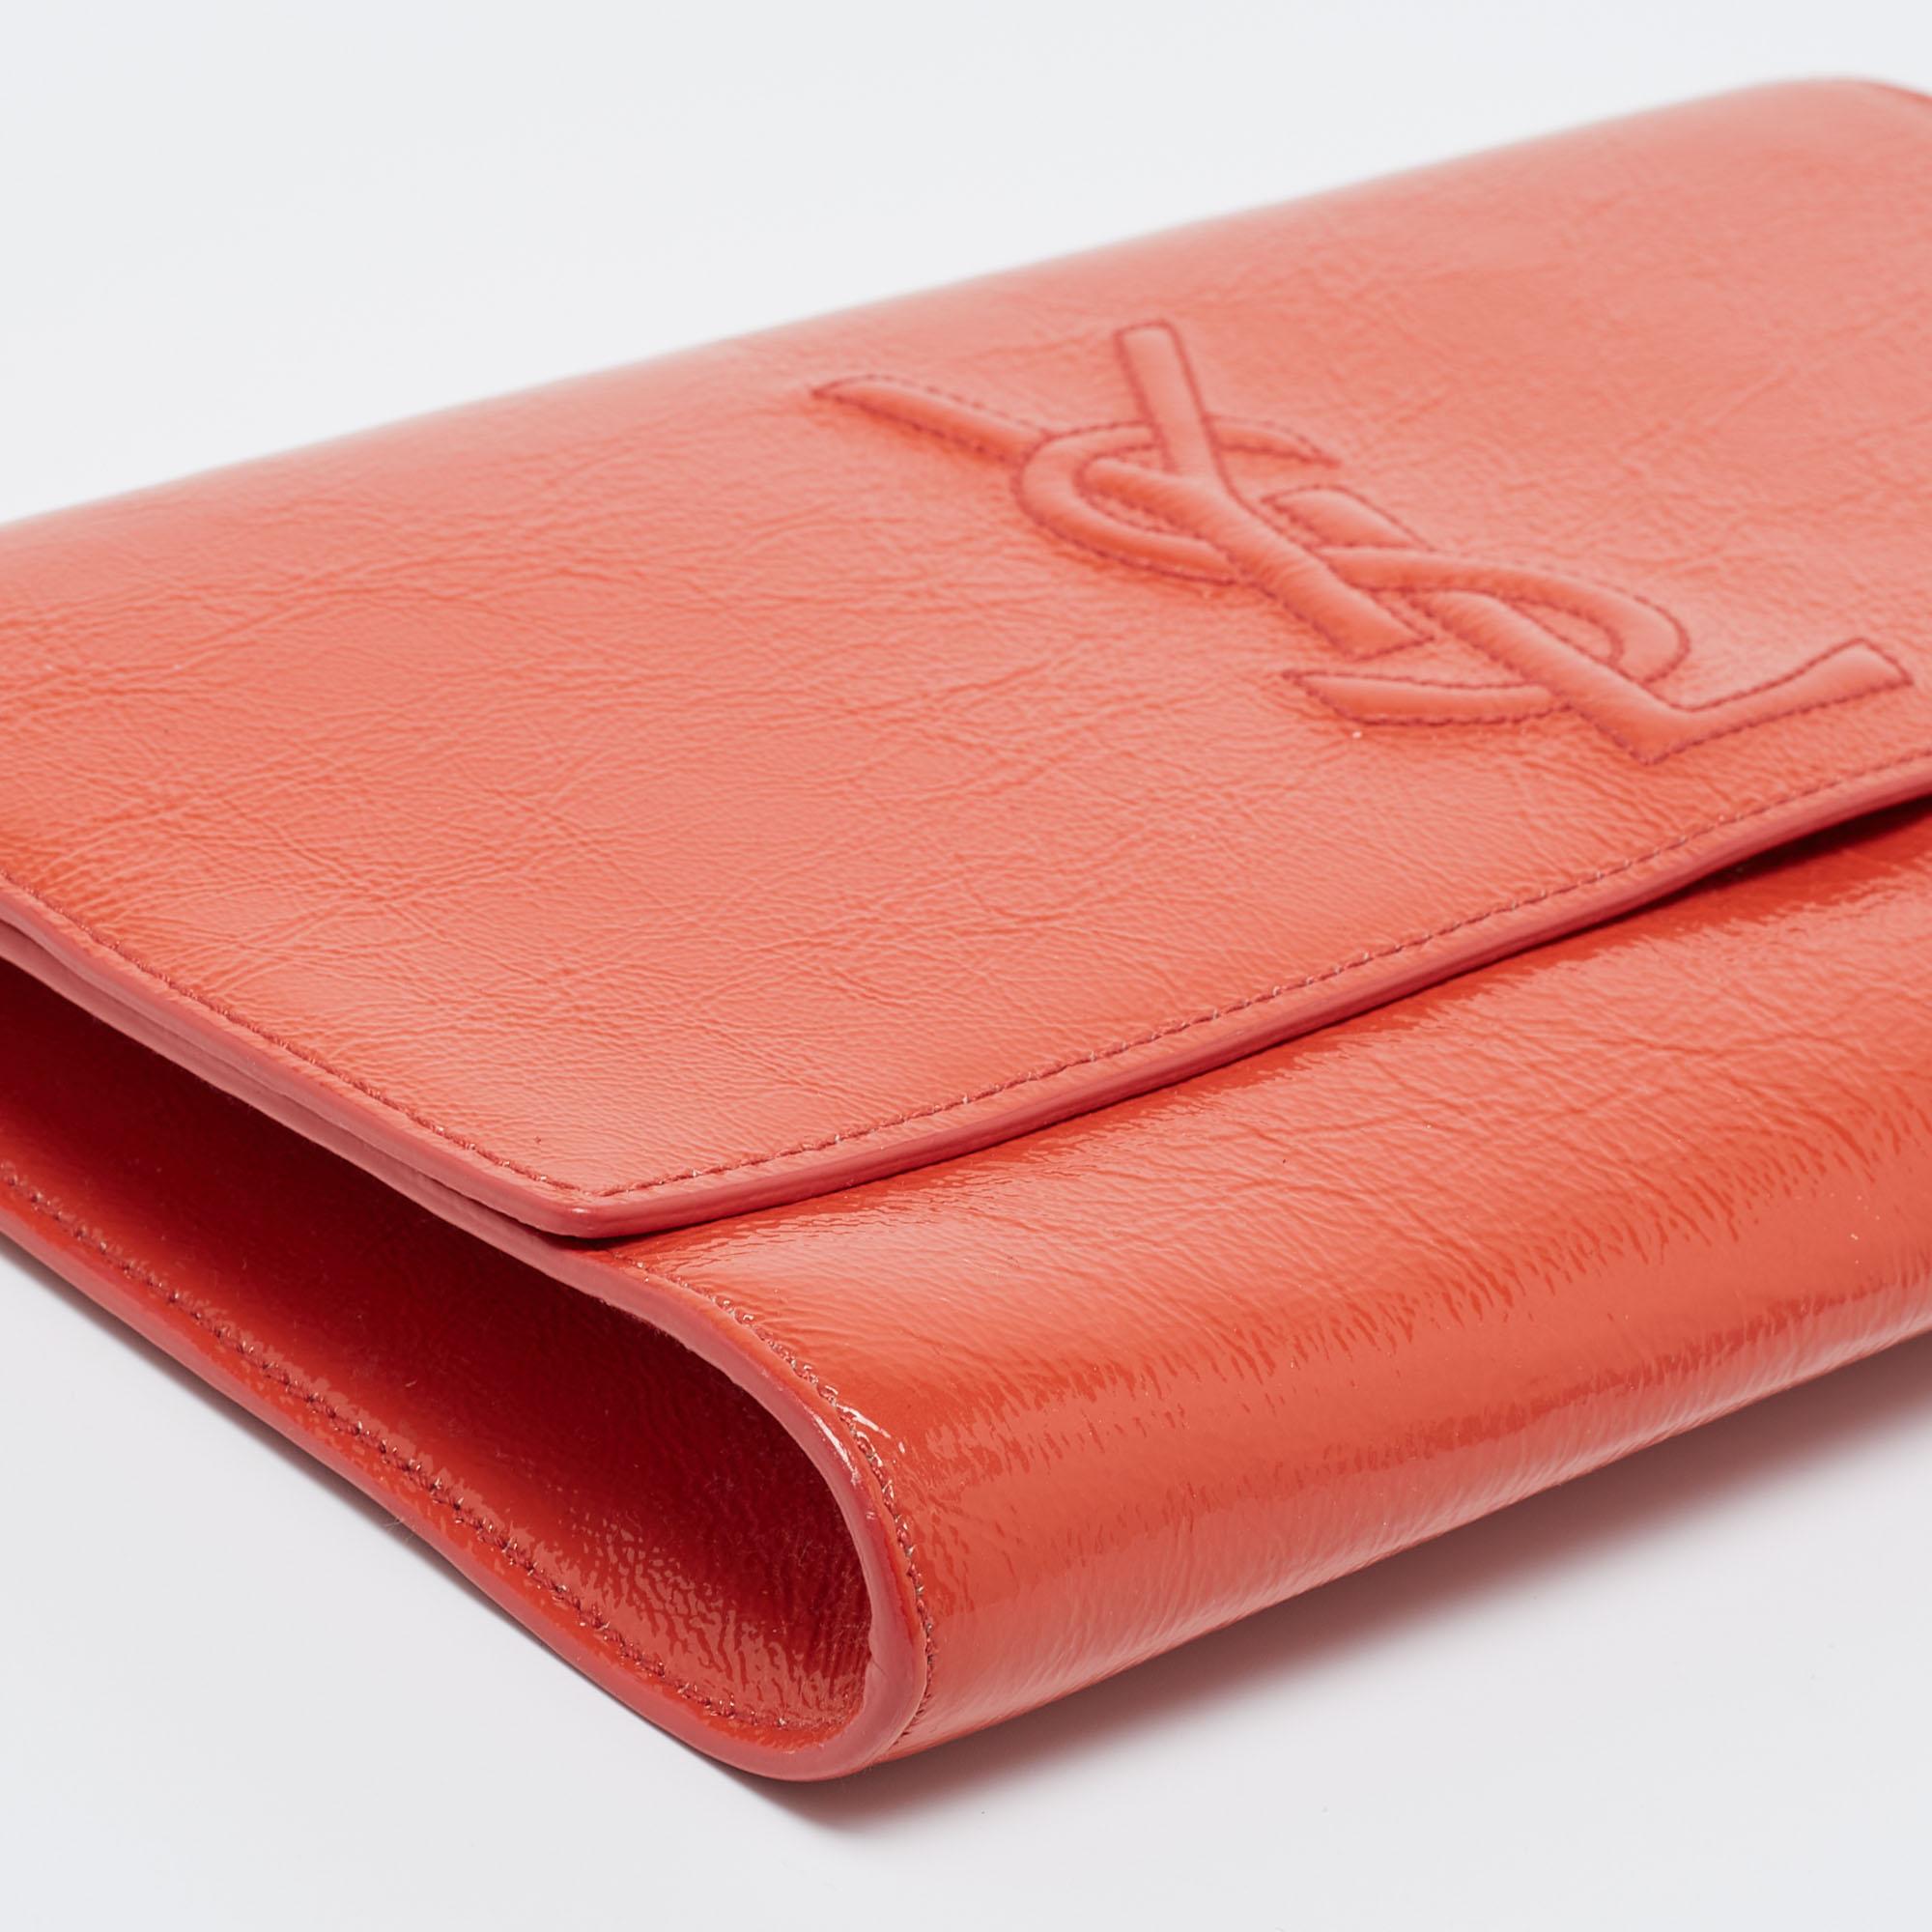 Yves Saint Laurent Orange Patent Leather Belle De Jour Clutch 6